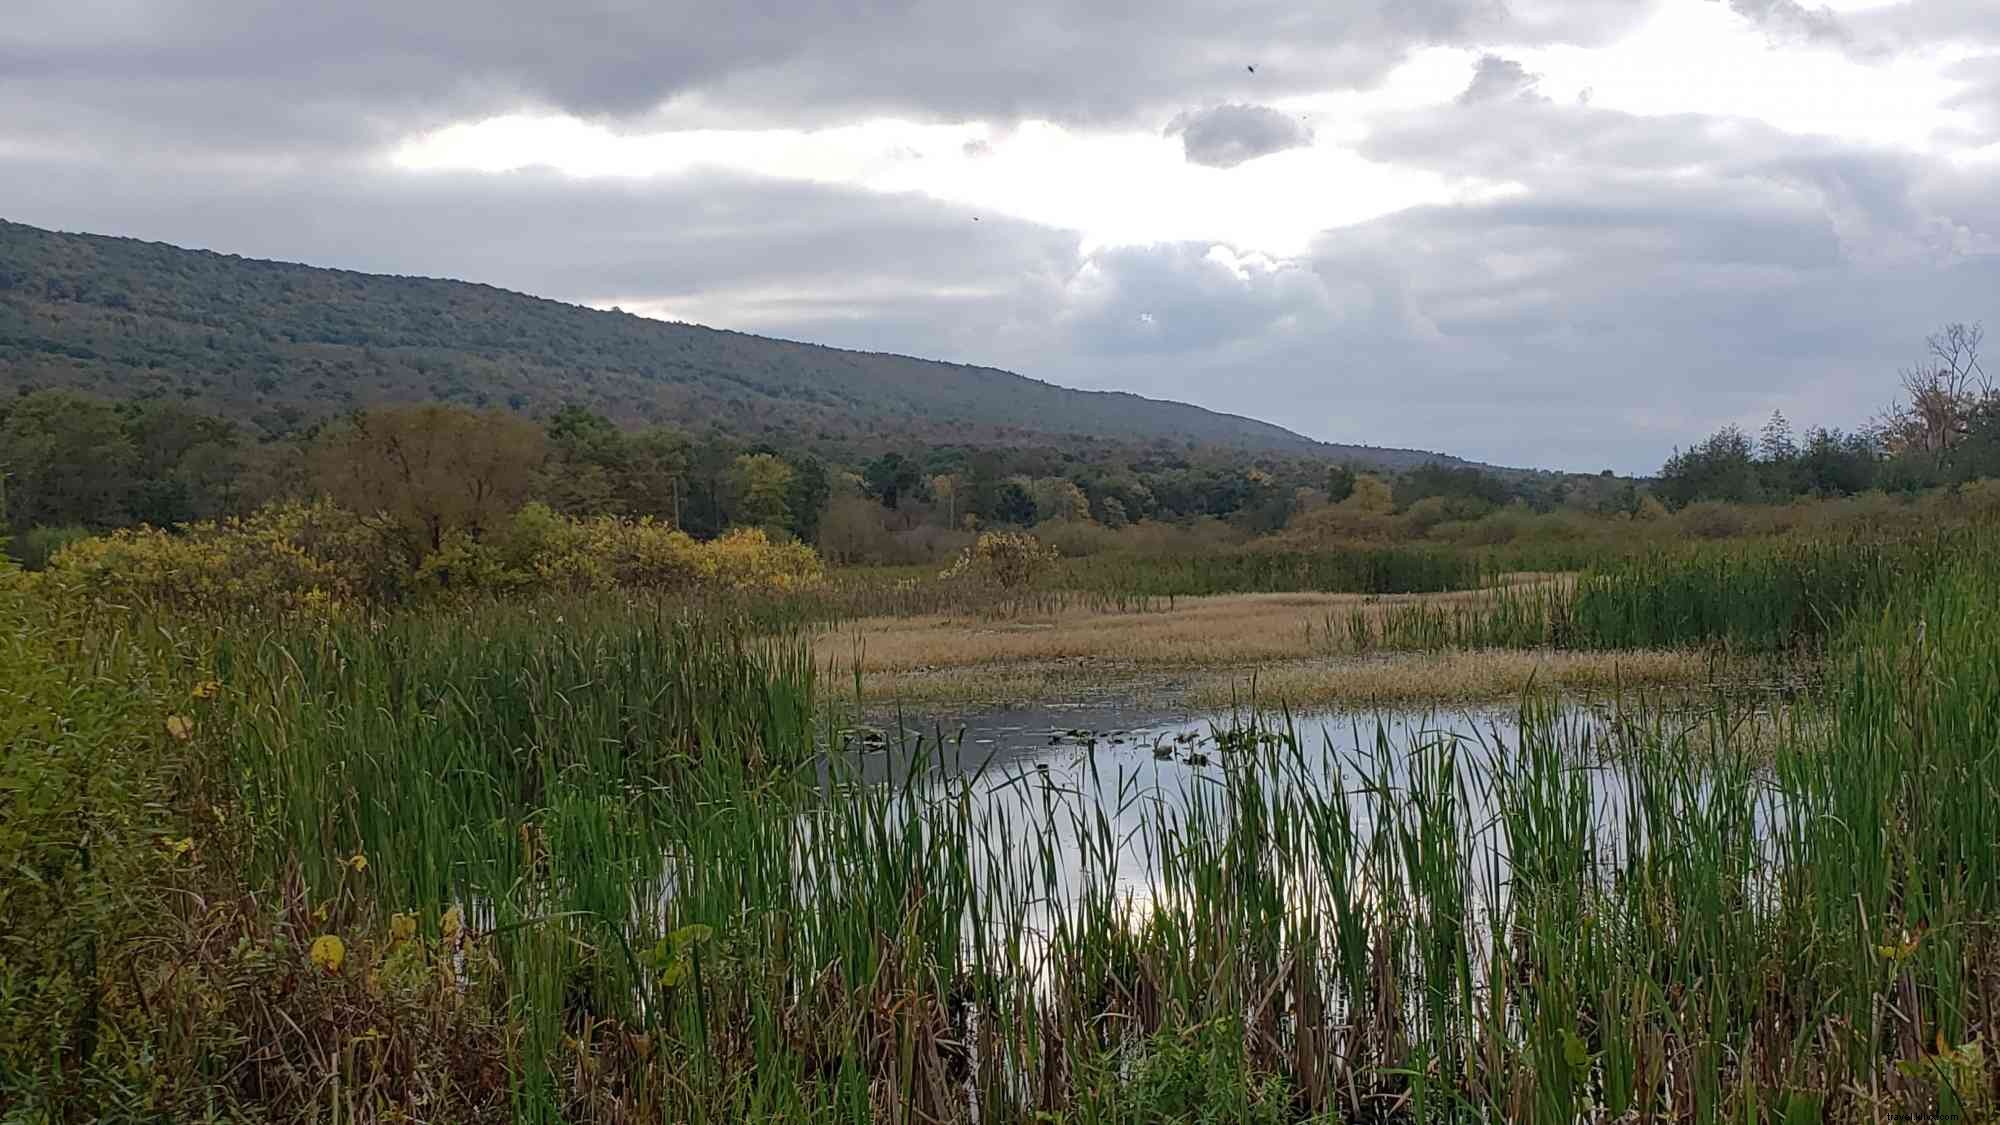 area birding yang dapat diakses mengundang pecinta alam ke Happy Valley, PA selama migrasi musim gugur 